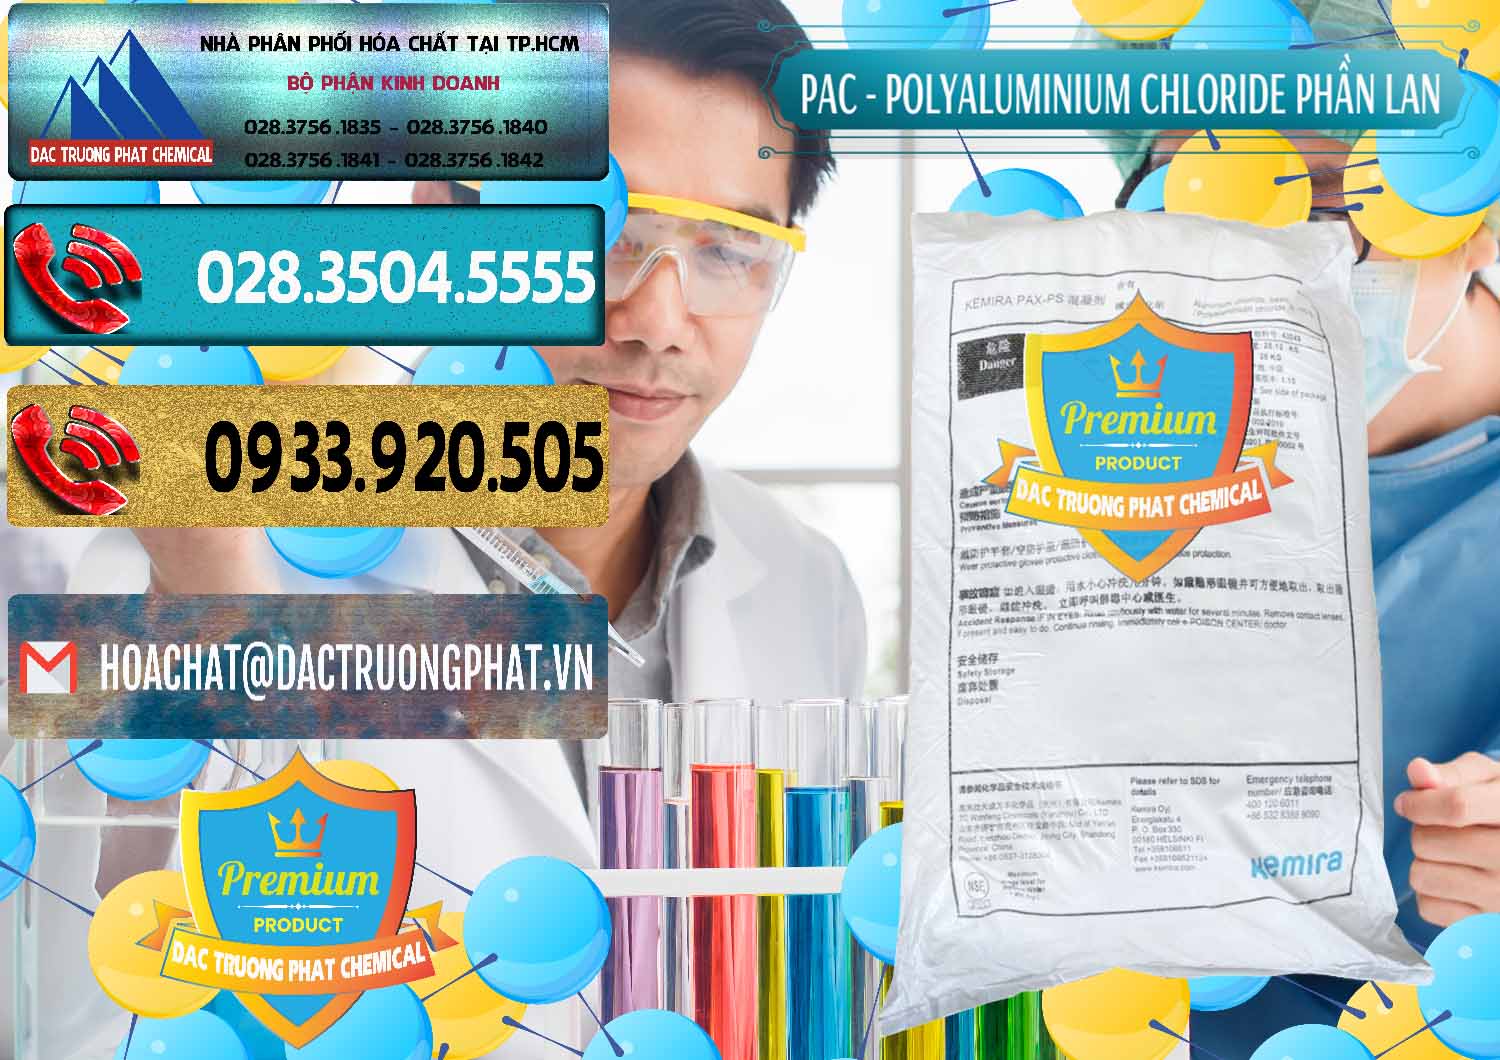 Đơn vị bán - cung cấp PAC - Polyaluminium Chloride Phần Lan Finland - 0383 - Cty chuyên phân phối _ kinh doanh hóa chất tại TP.HCM - hoachatdetnhuom.com